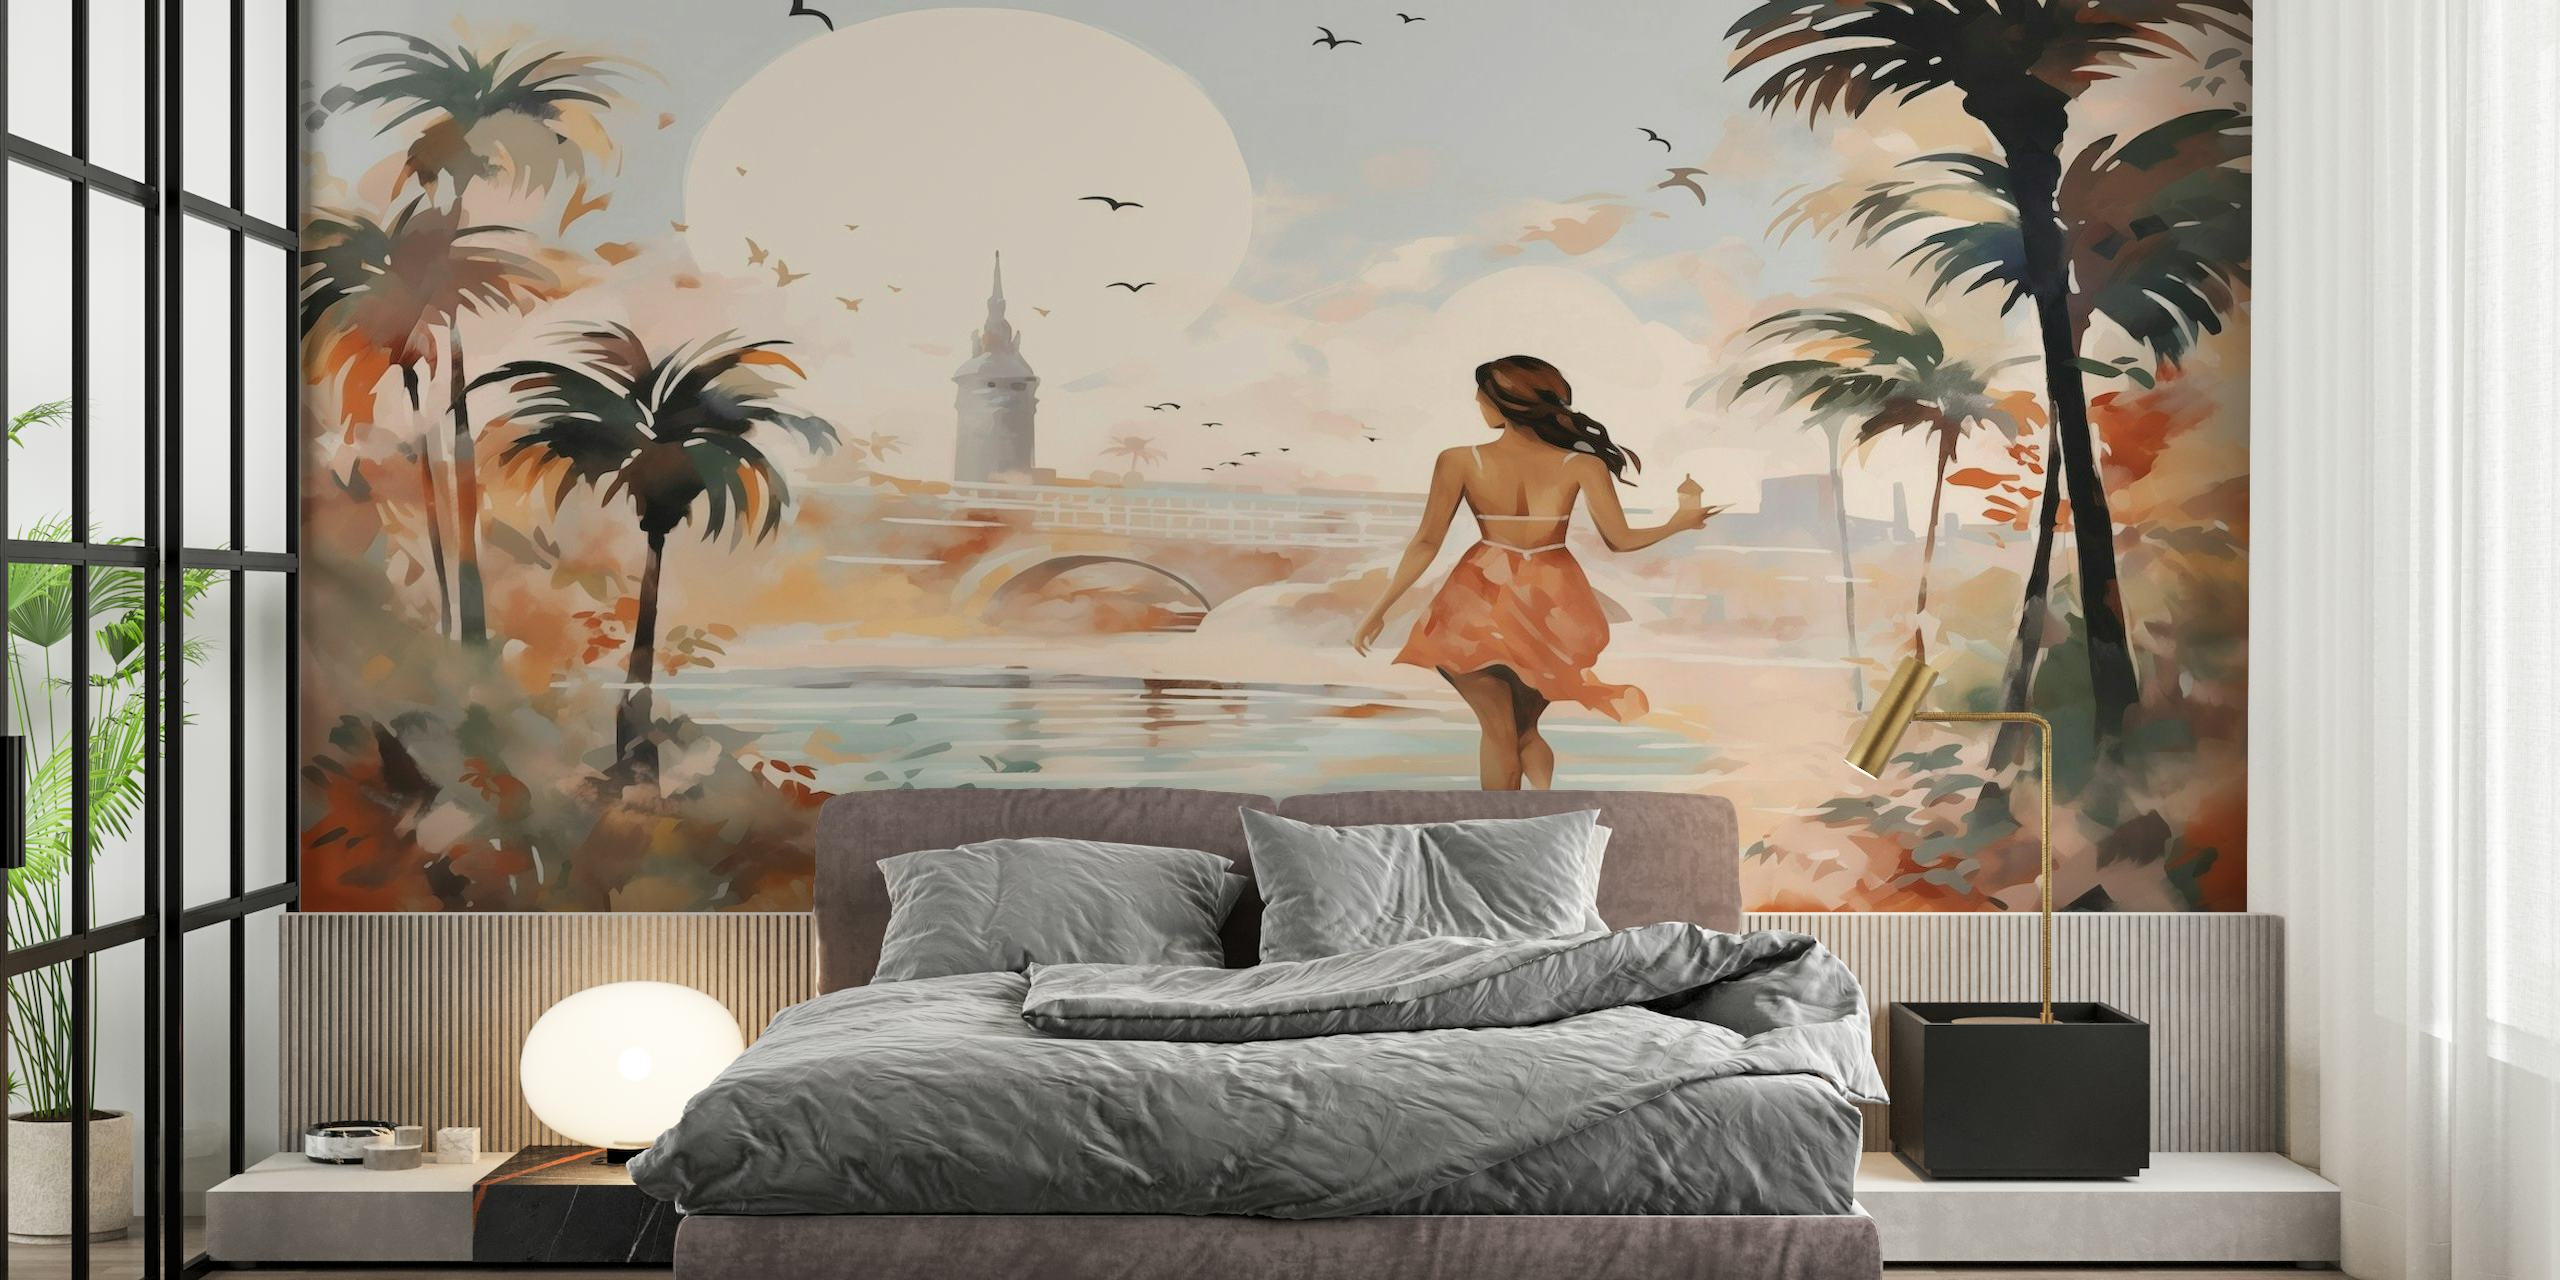 Fotomural vinílico de parede impressionista de paisagem urbana de verão com a silhueta de uma pessoa andando sob palmeiras.